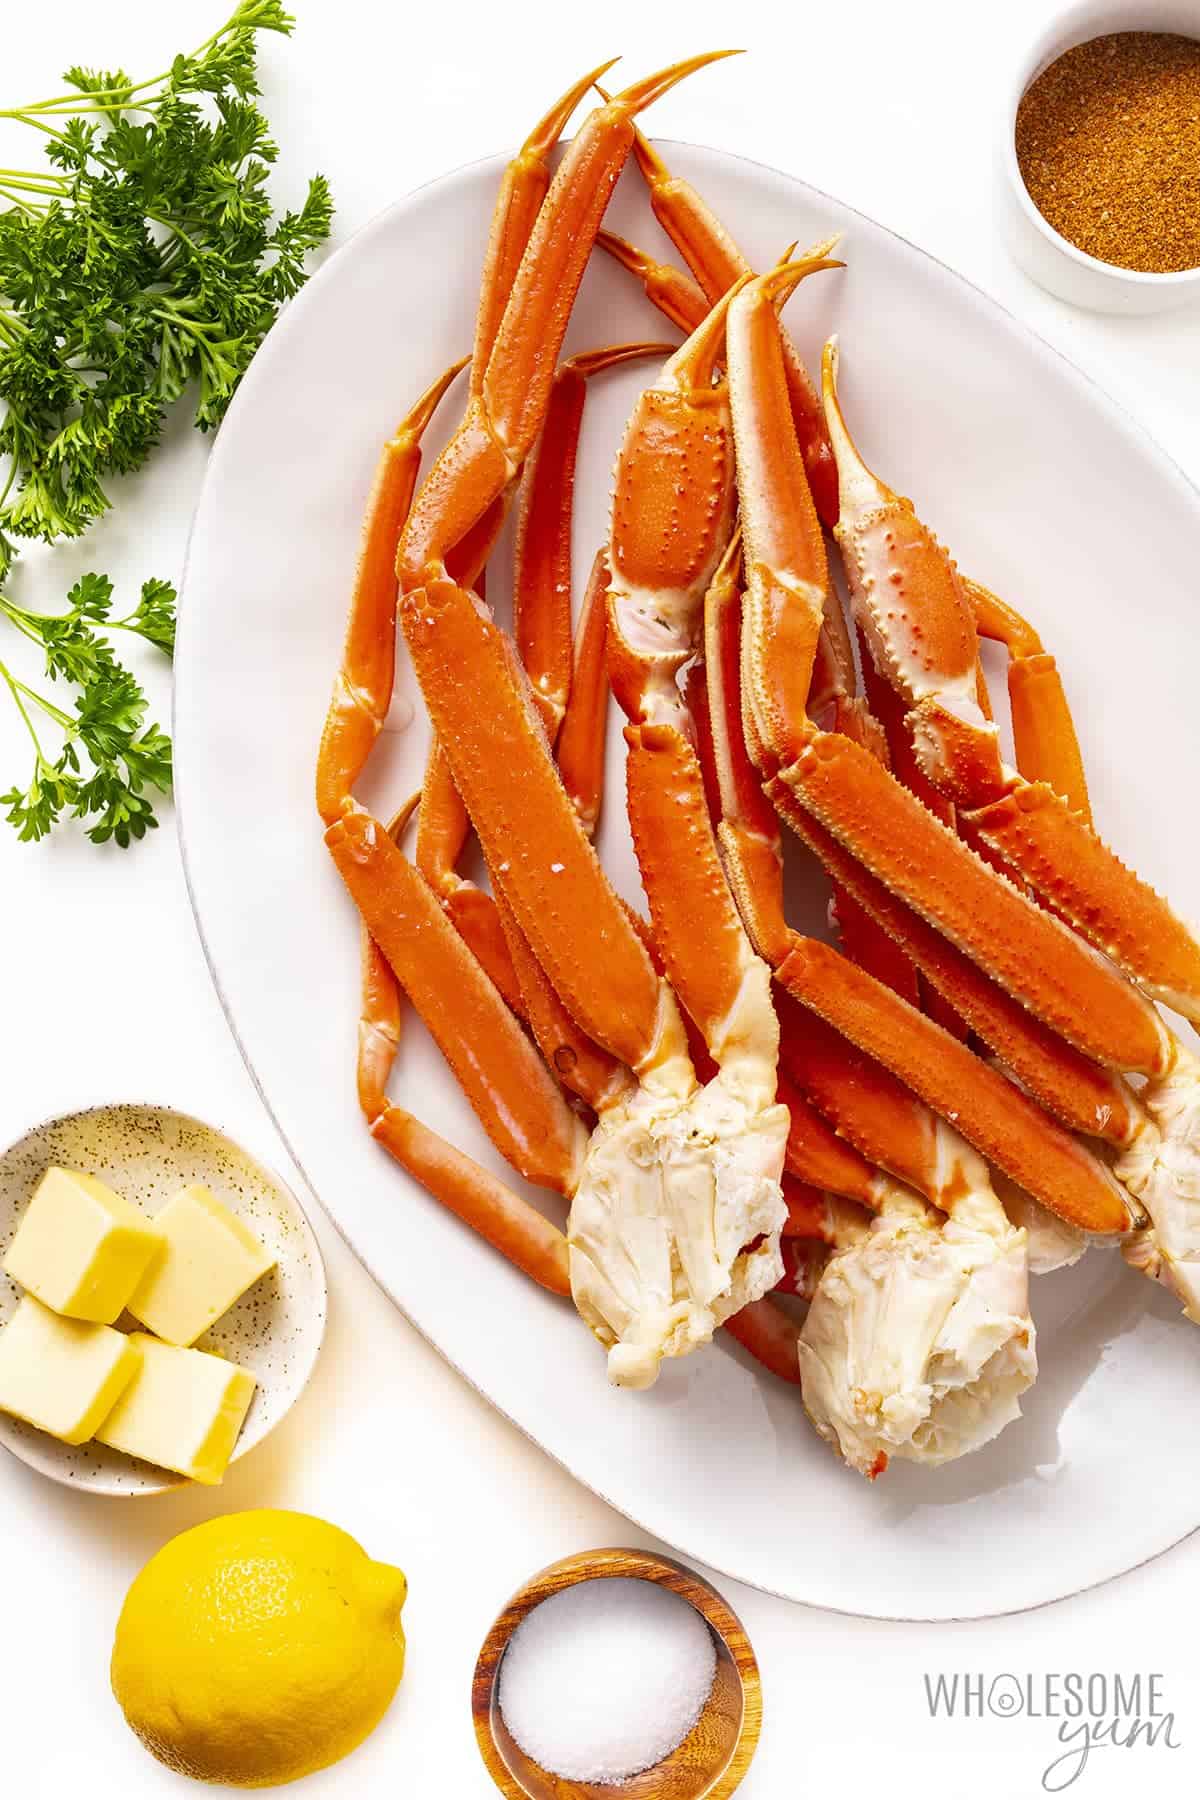 Ingredients to make crab legs recipe